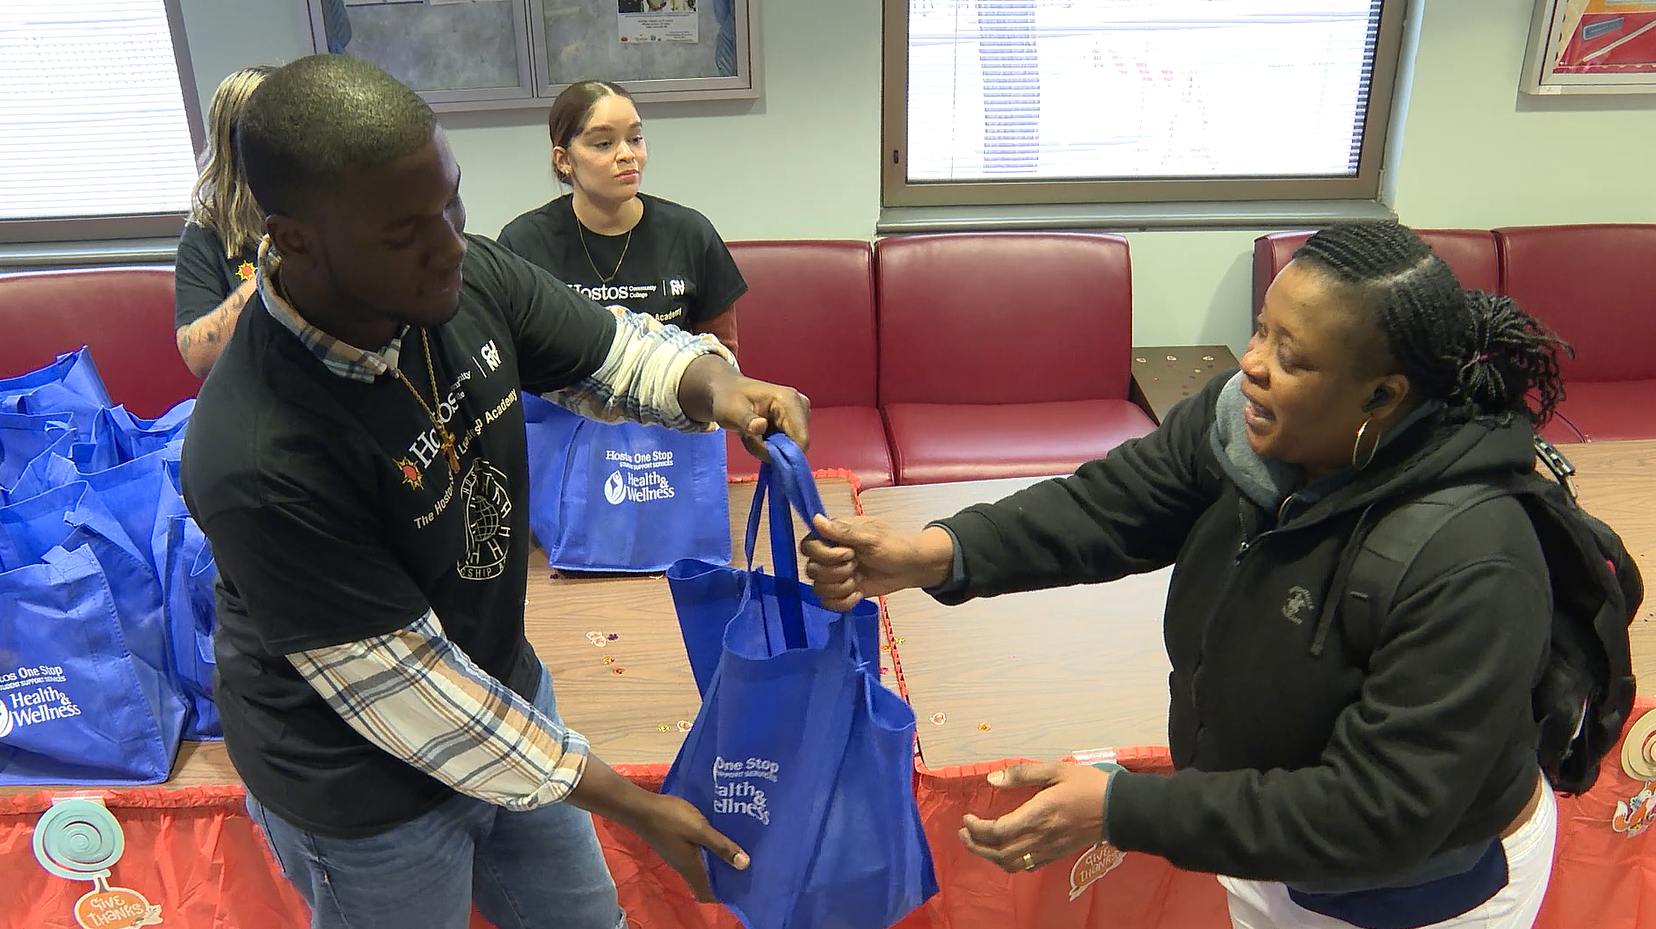 뉴욕 브롱스 호느토스 칼리지 먹거리 나눔터에서 학생이 음식이 든 가방을 받아가고 있다.